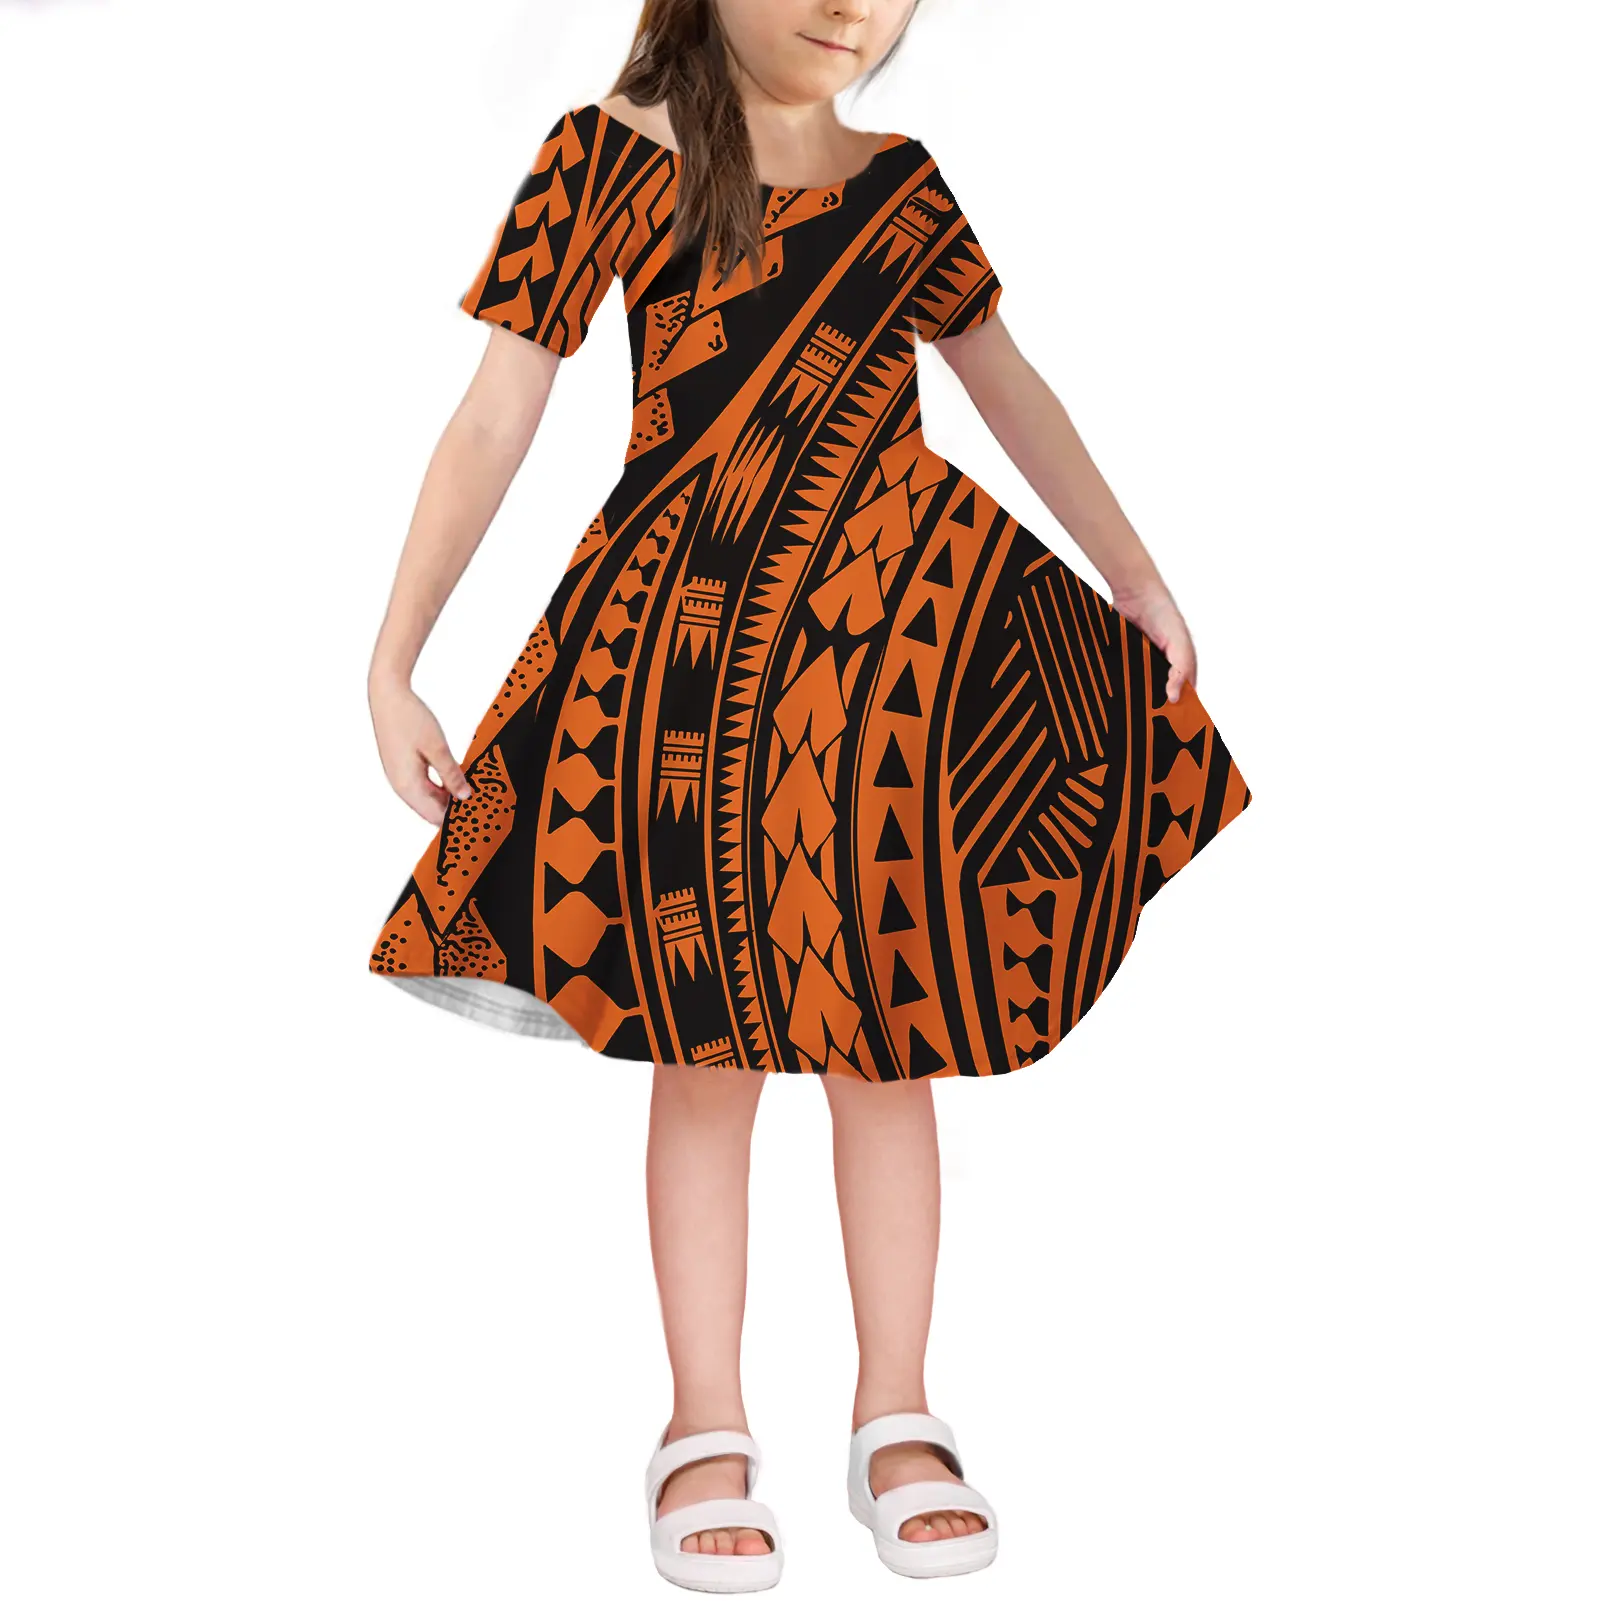 MOQ 1PC Polinesiana Tribale di Stile di Estate Ultime Hawaii Modello Occidentale di Disegno Del Partito di Usura Dei Bambini Della Ragazza Dei Bambini del Vestito Per I Bambini ragazza